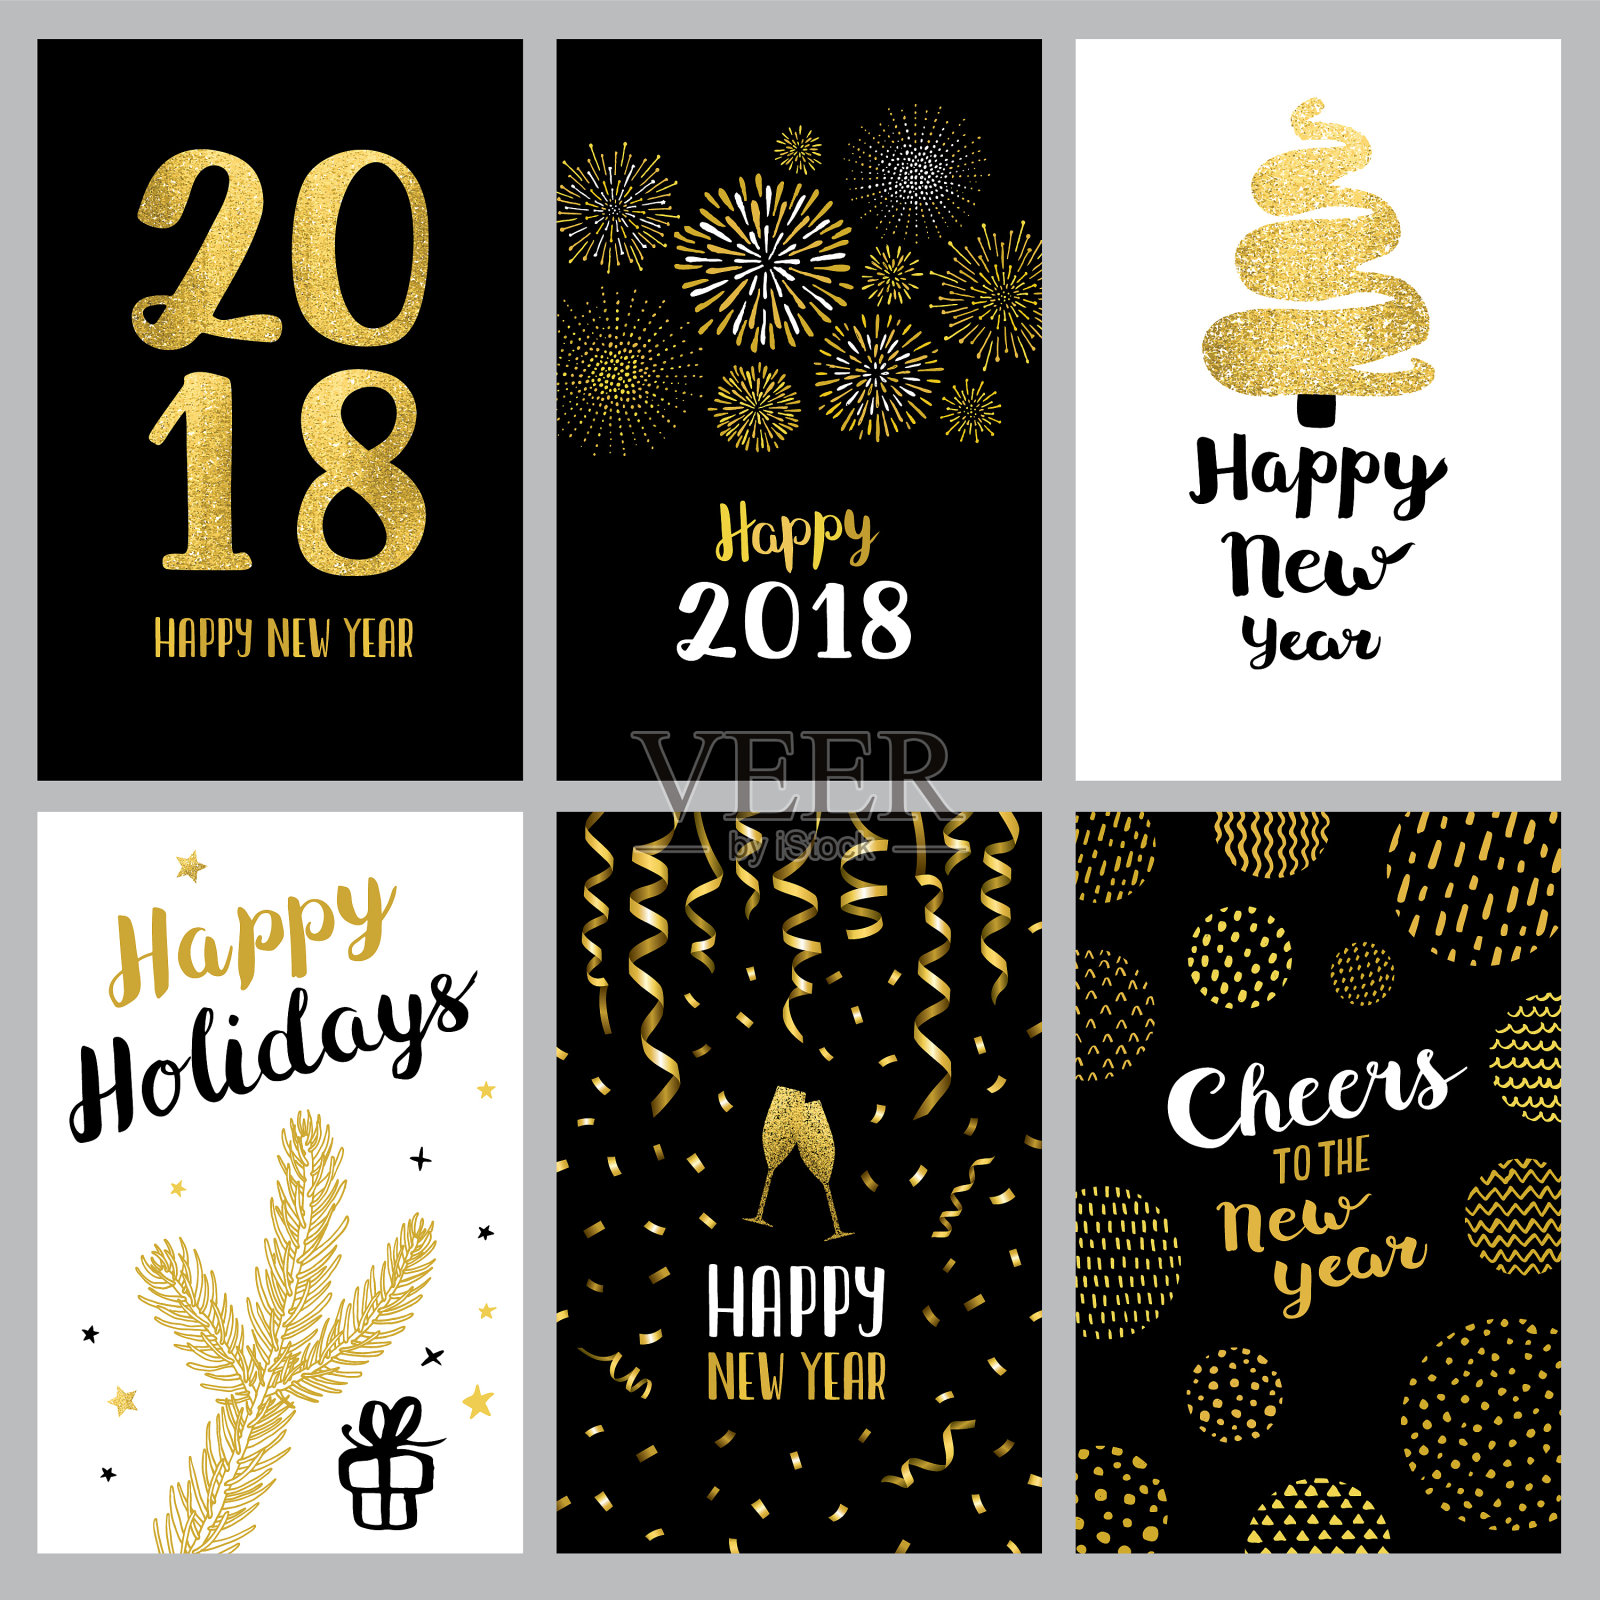 2018年新年快乐横幅设计模板素材